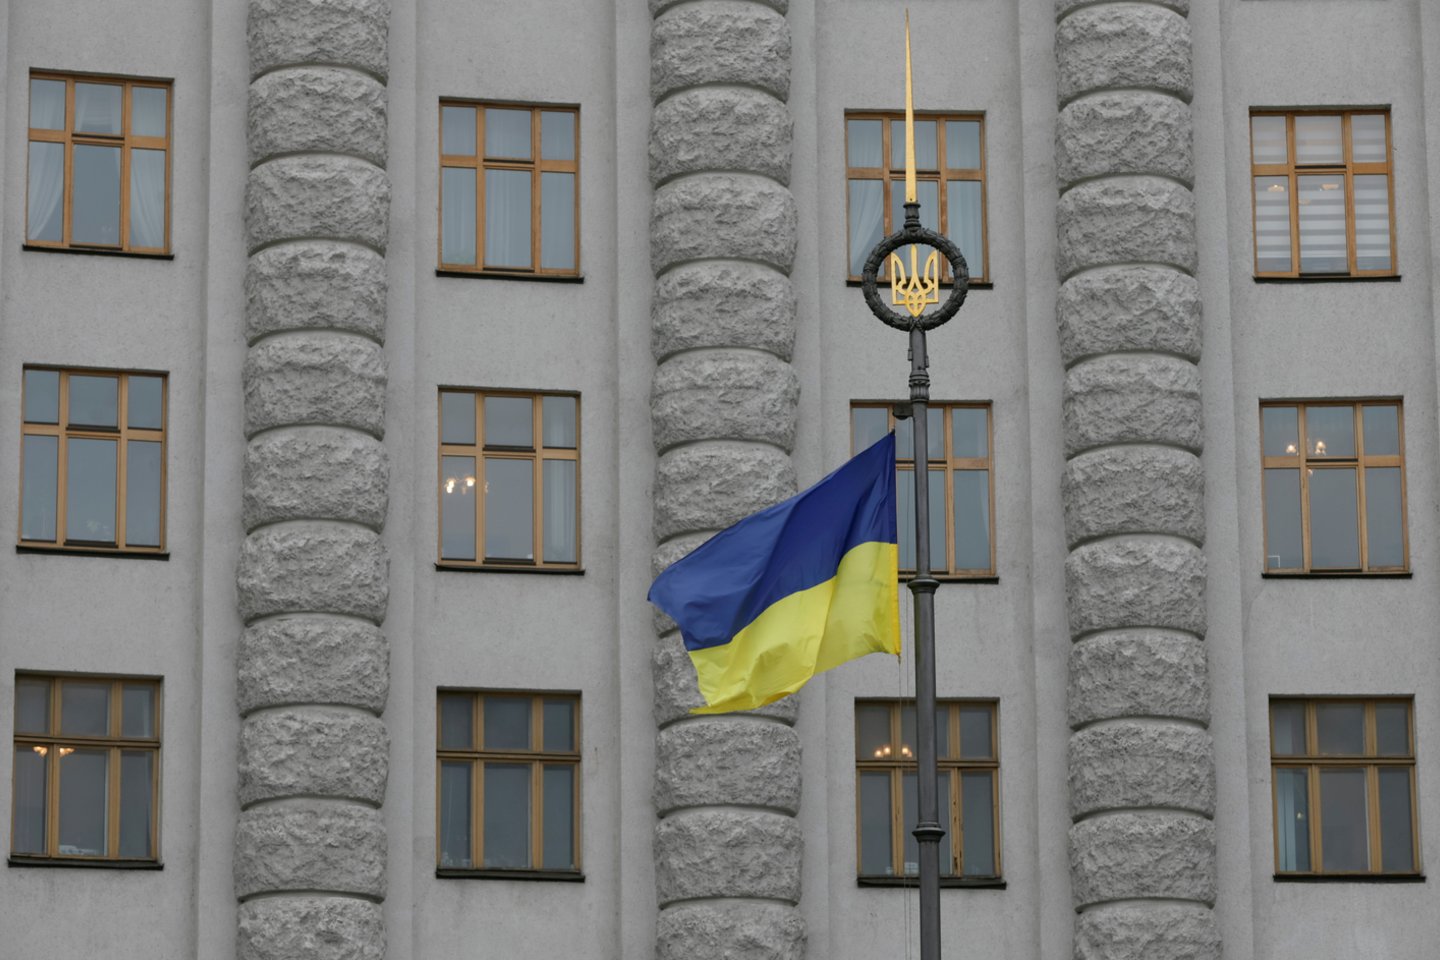 Nenustatytas vyriškis pateko į Ukrainos vyriausybės pastatą ir pagrasino viduje susprogdinti granatą.<br>REUTERS/Scanpix nuotr.